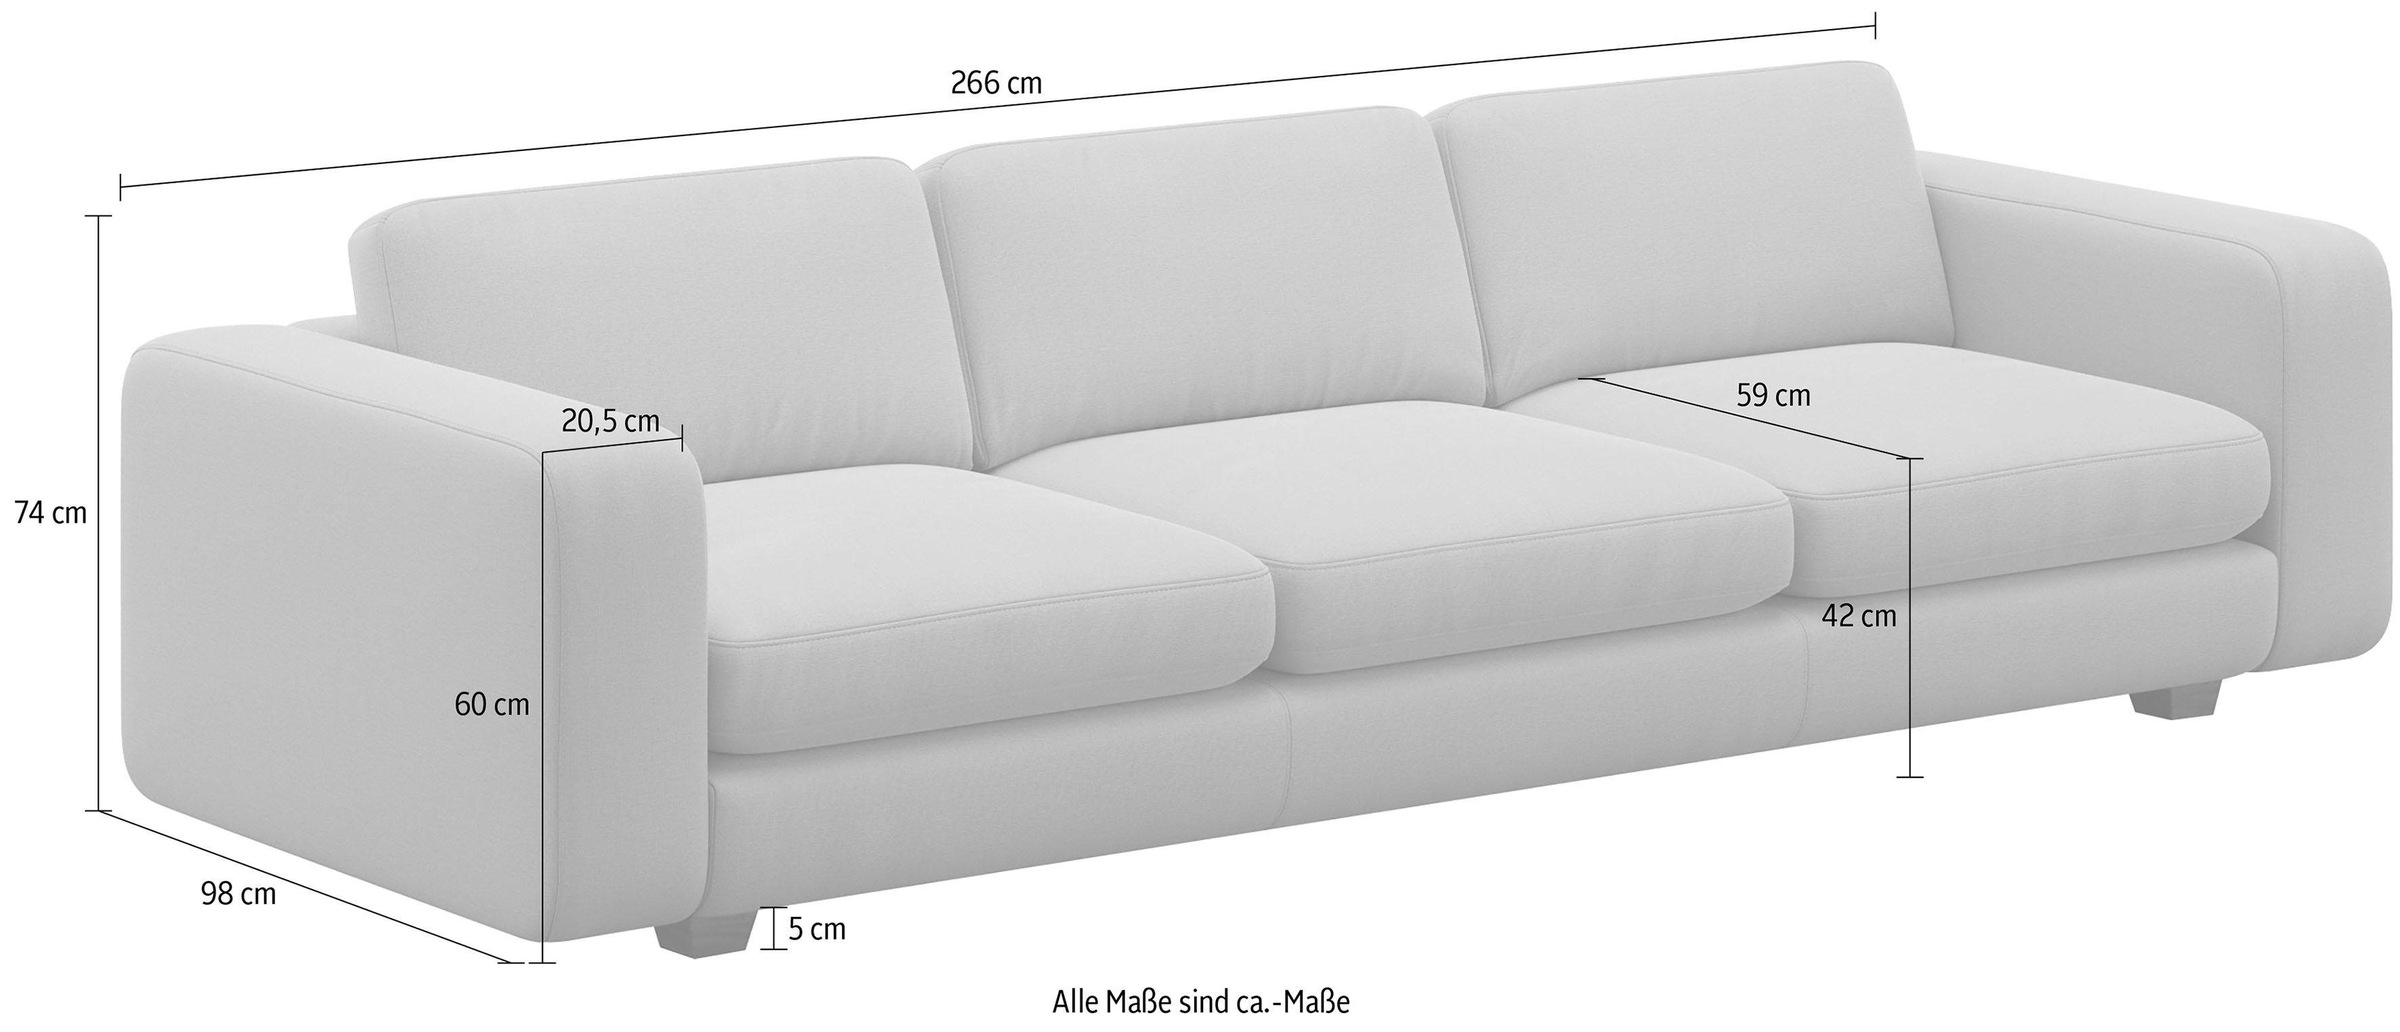 machalke® 4-Sitzer »valentino«, mit breiten Armlehnen, Füsse Walnuss, Breite 266 cm